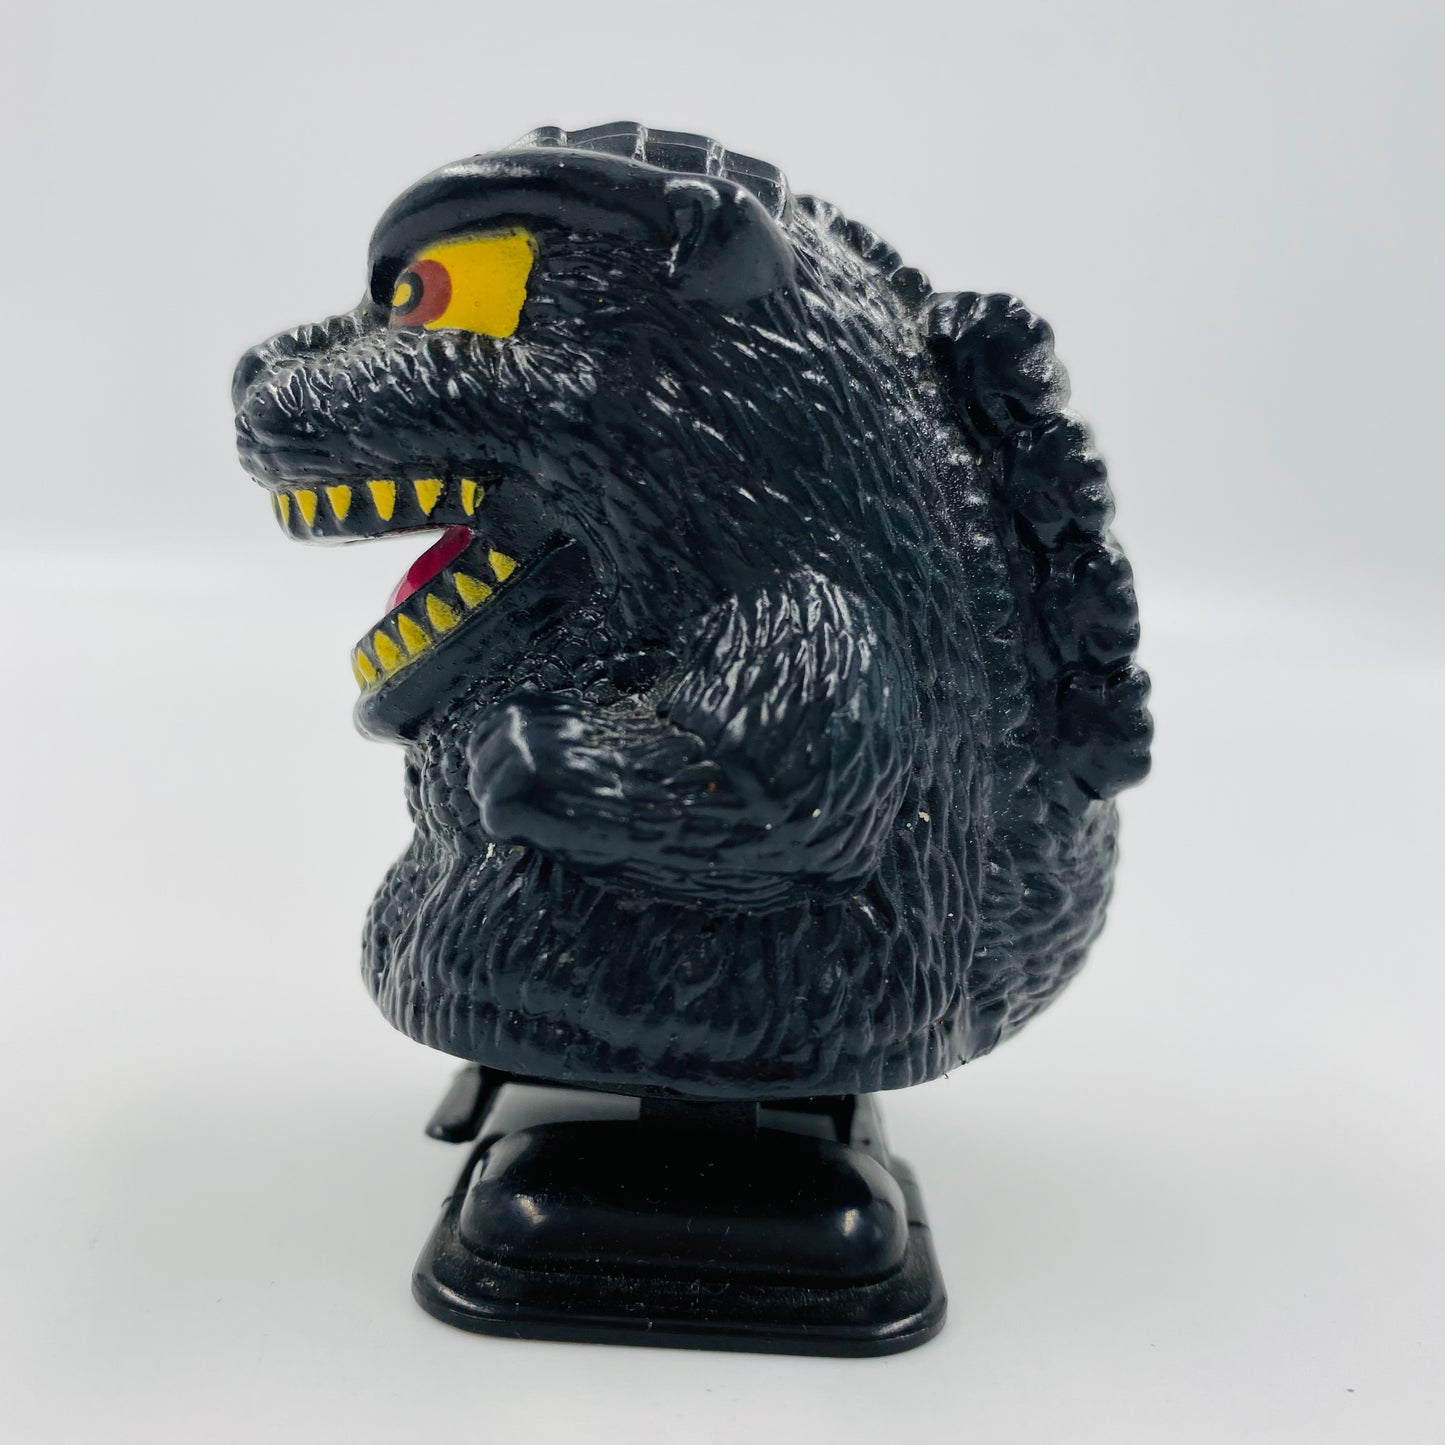 Godzilla wind-up